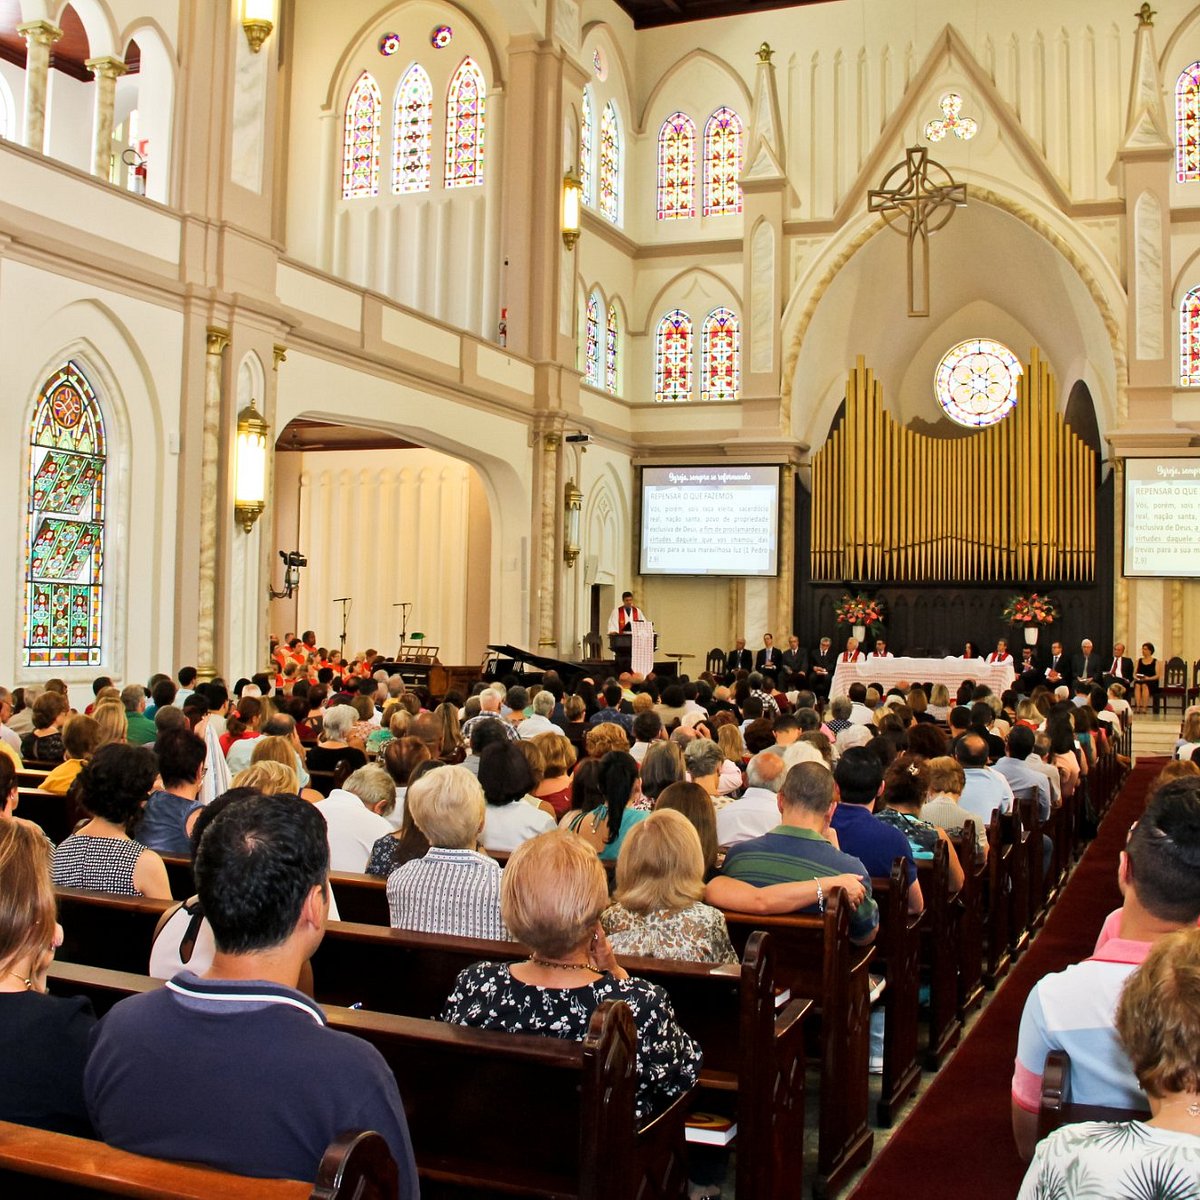 Salto evangélico: veja quais são as maiores igrejas evangélicas do país